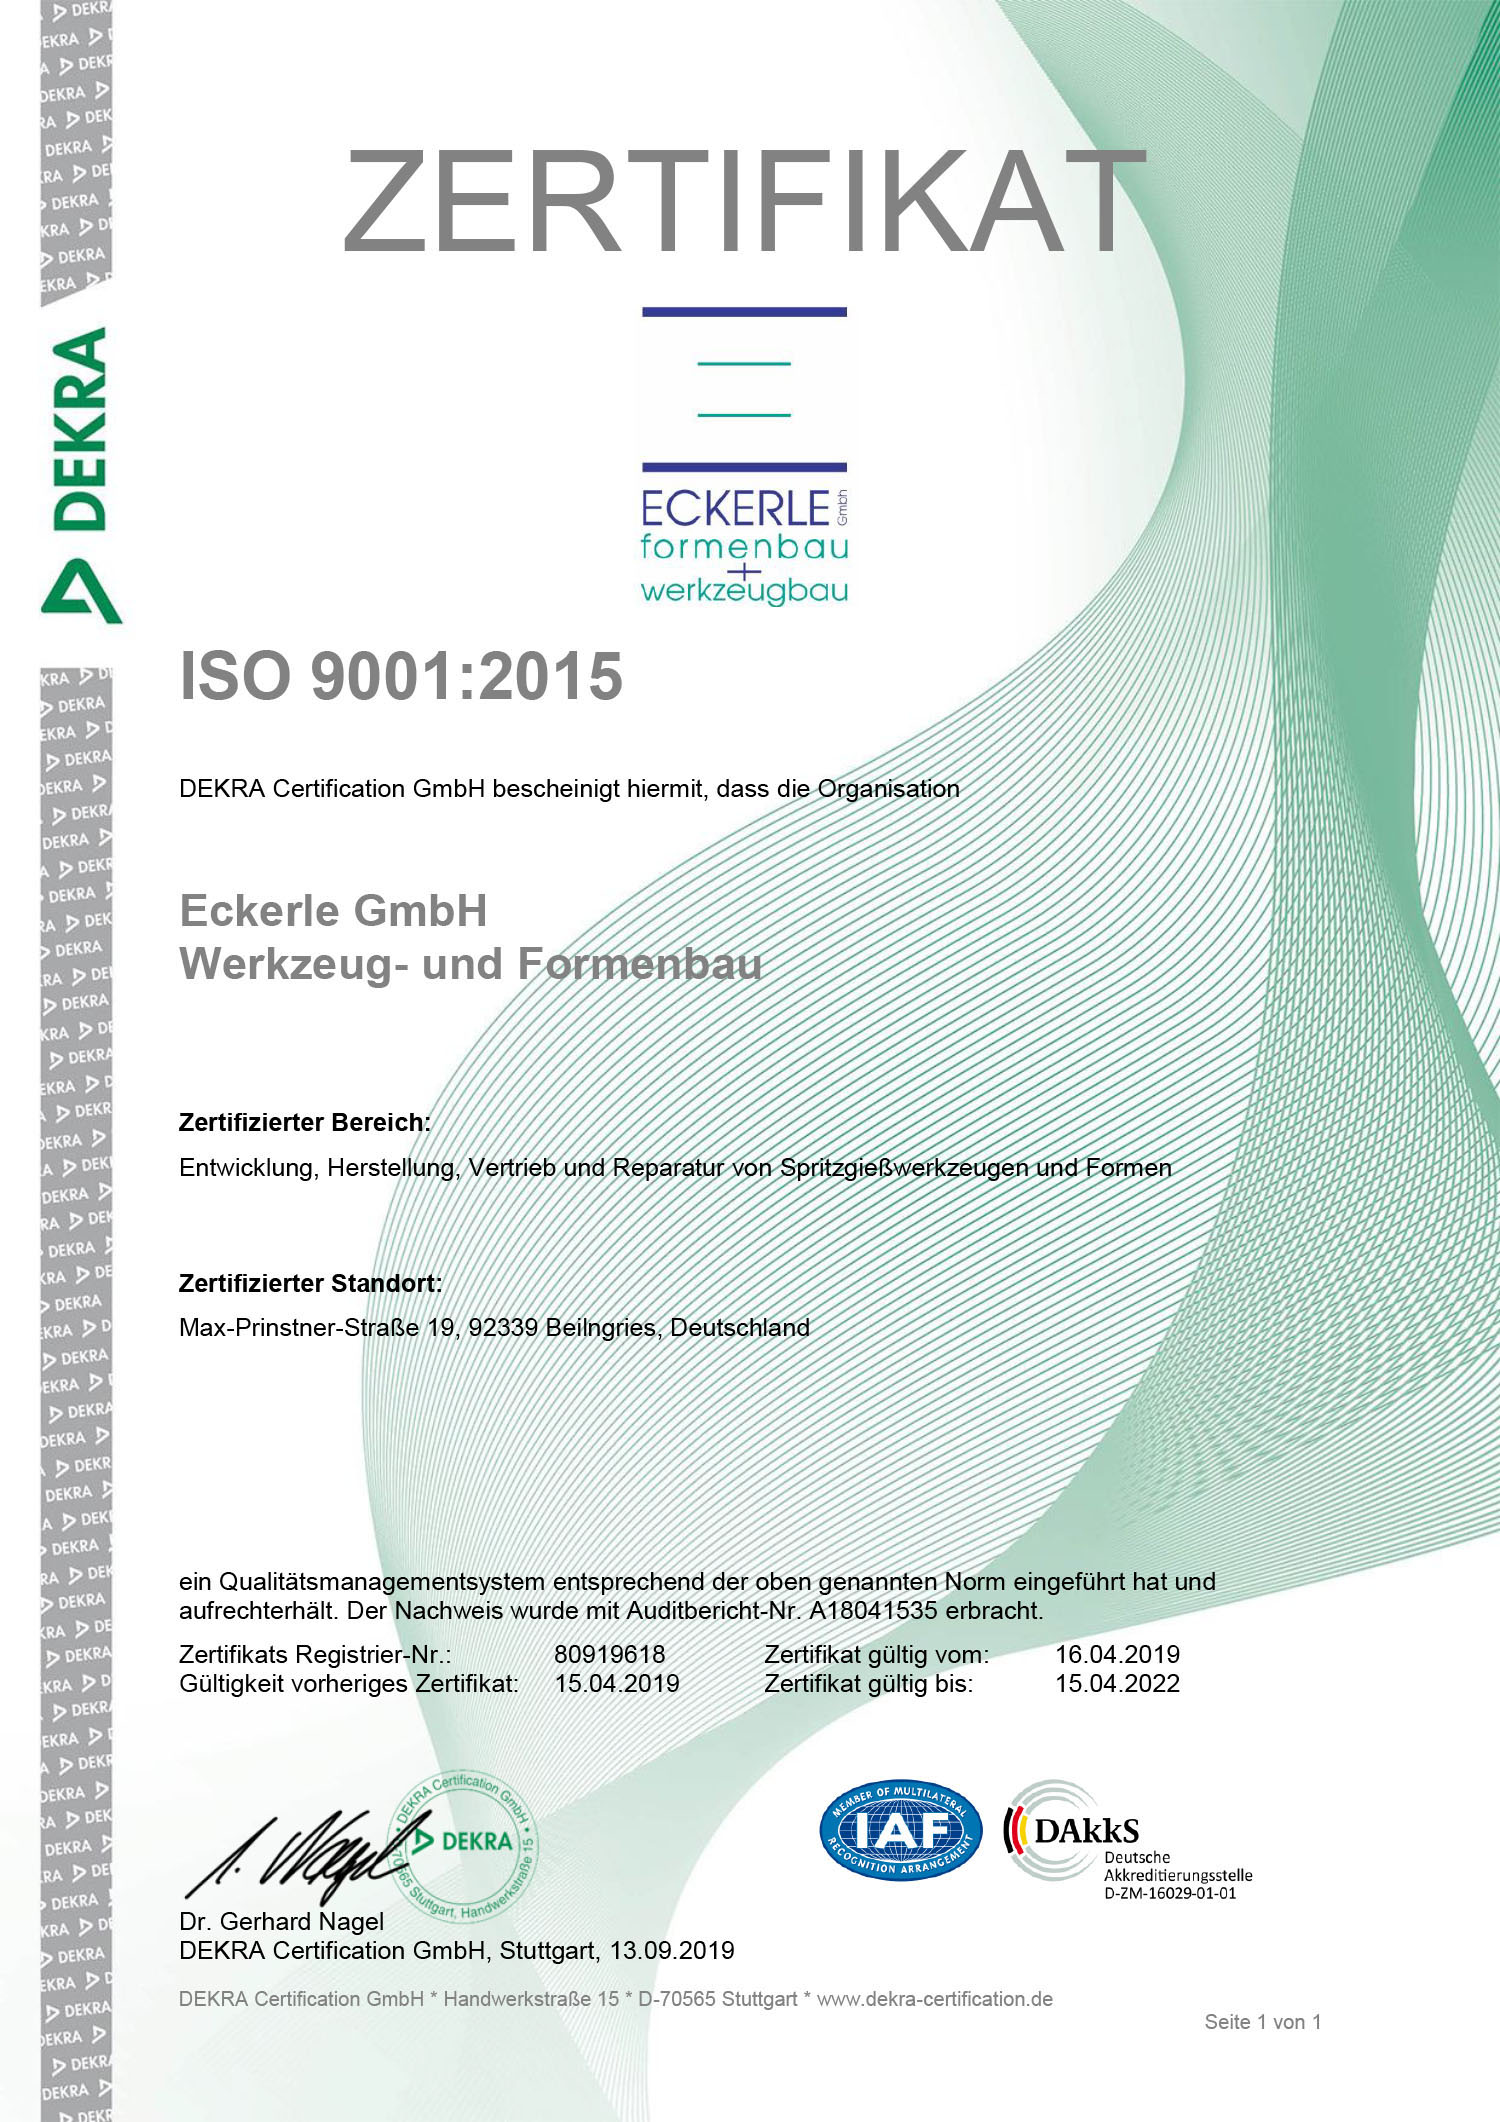 Zertifikat ECKERLE formenbau + werkzeubau - ISO 9001:2015